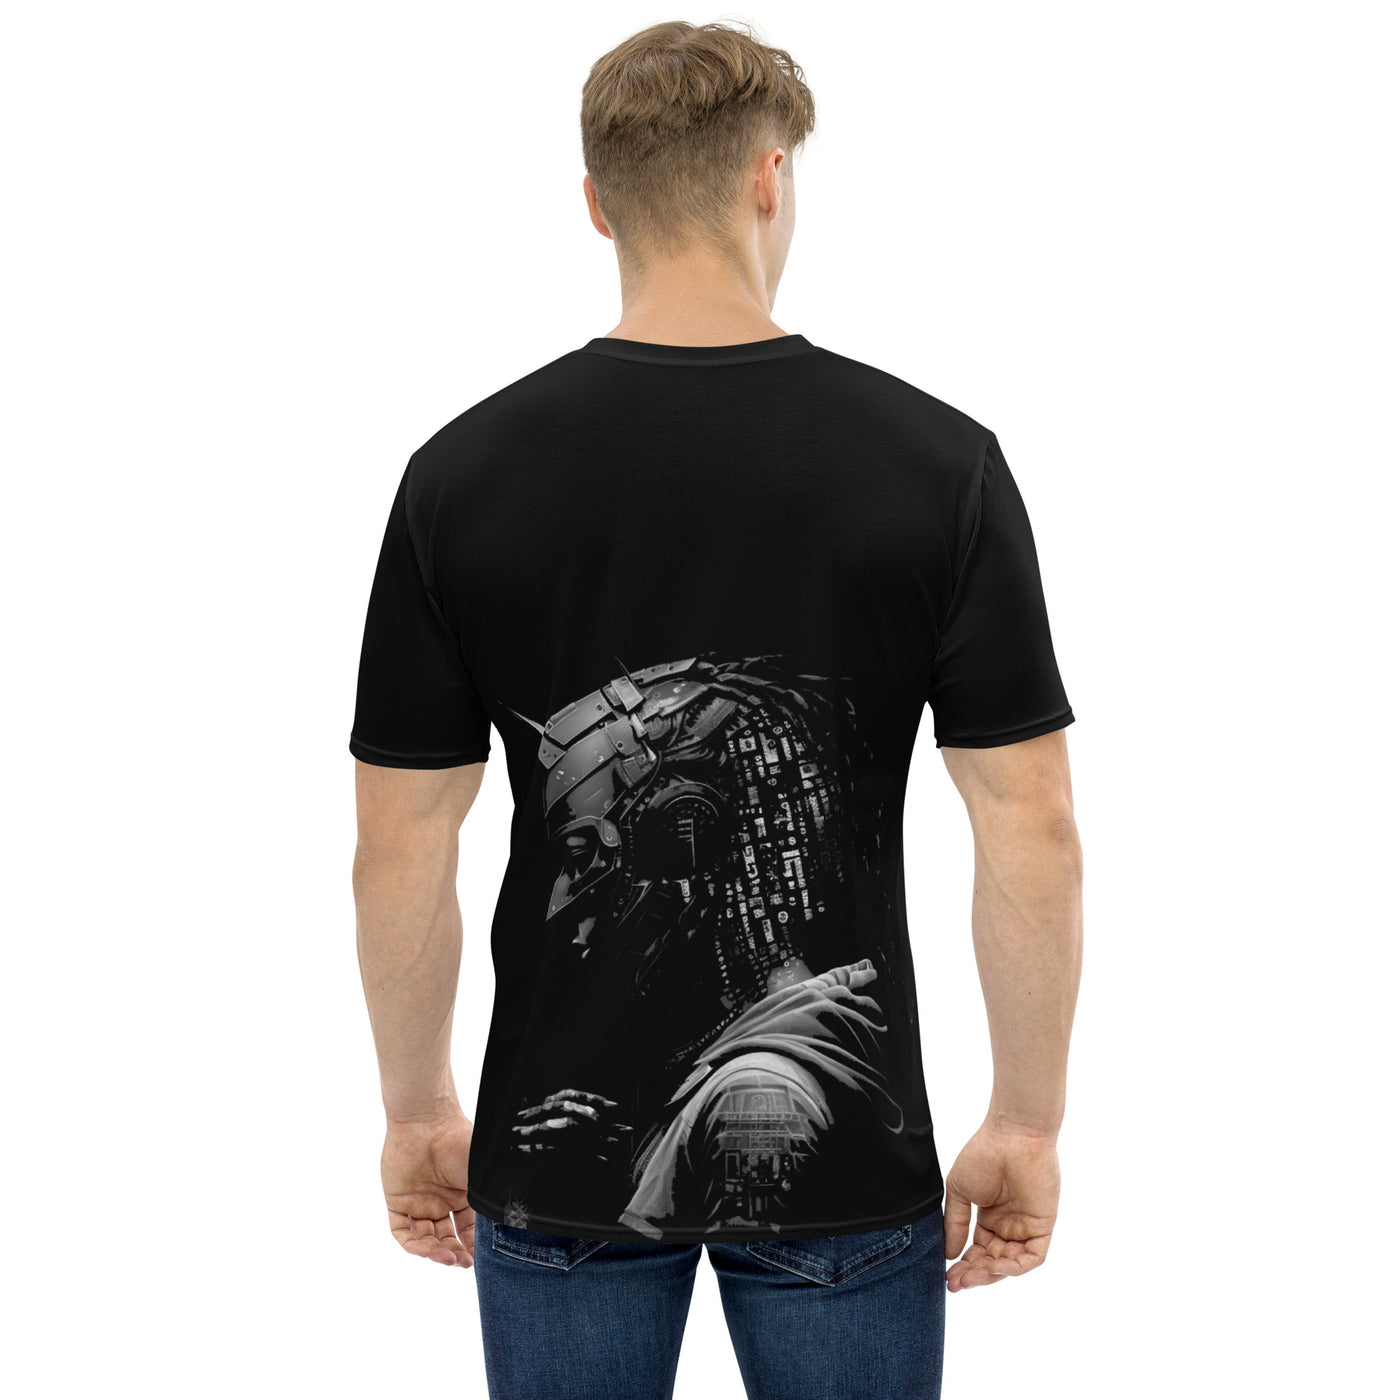 Cyberware assassin v35 - Men's t-shirt